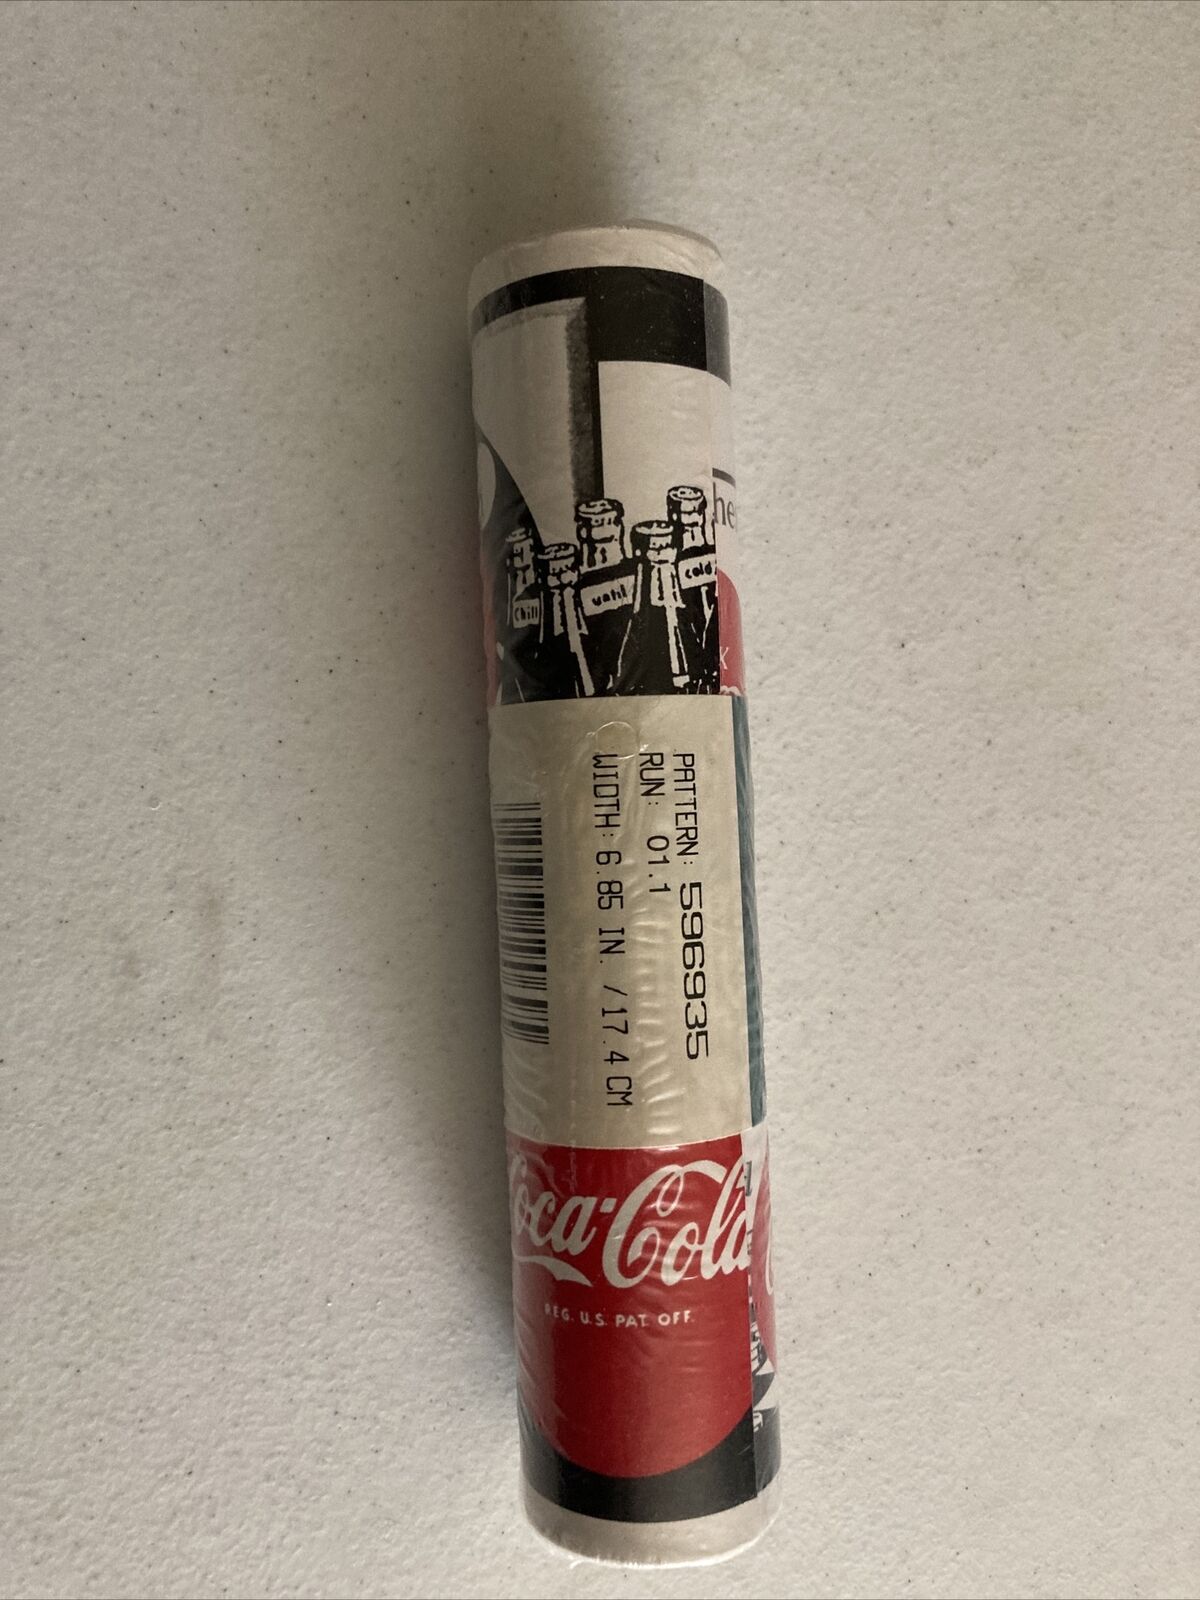 Genuine Vintage Ads Coca Cola Coke Bottles  Wallpaper Border